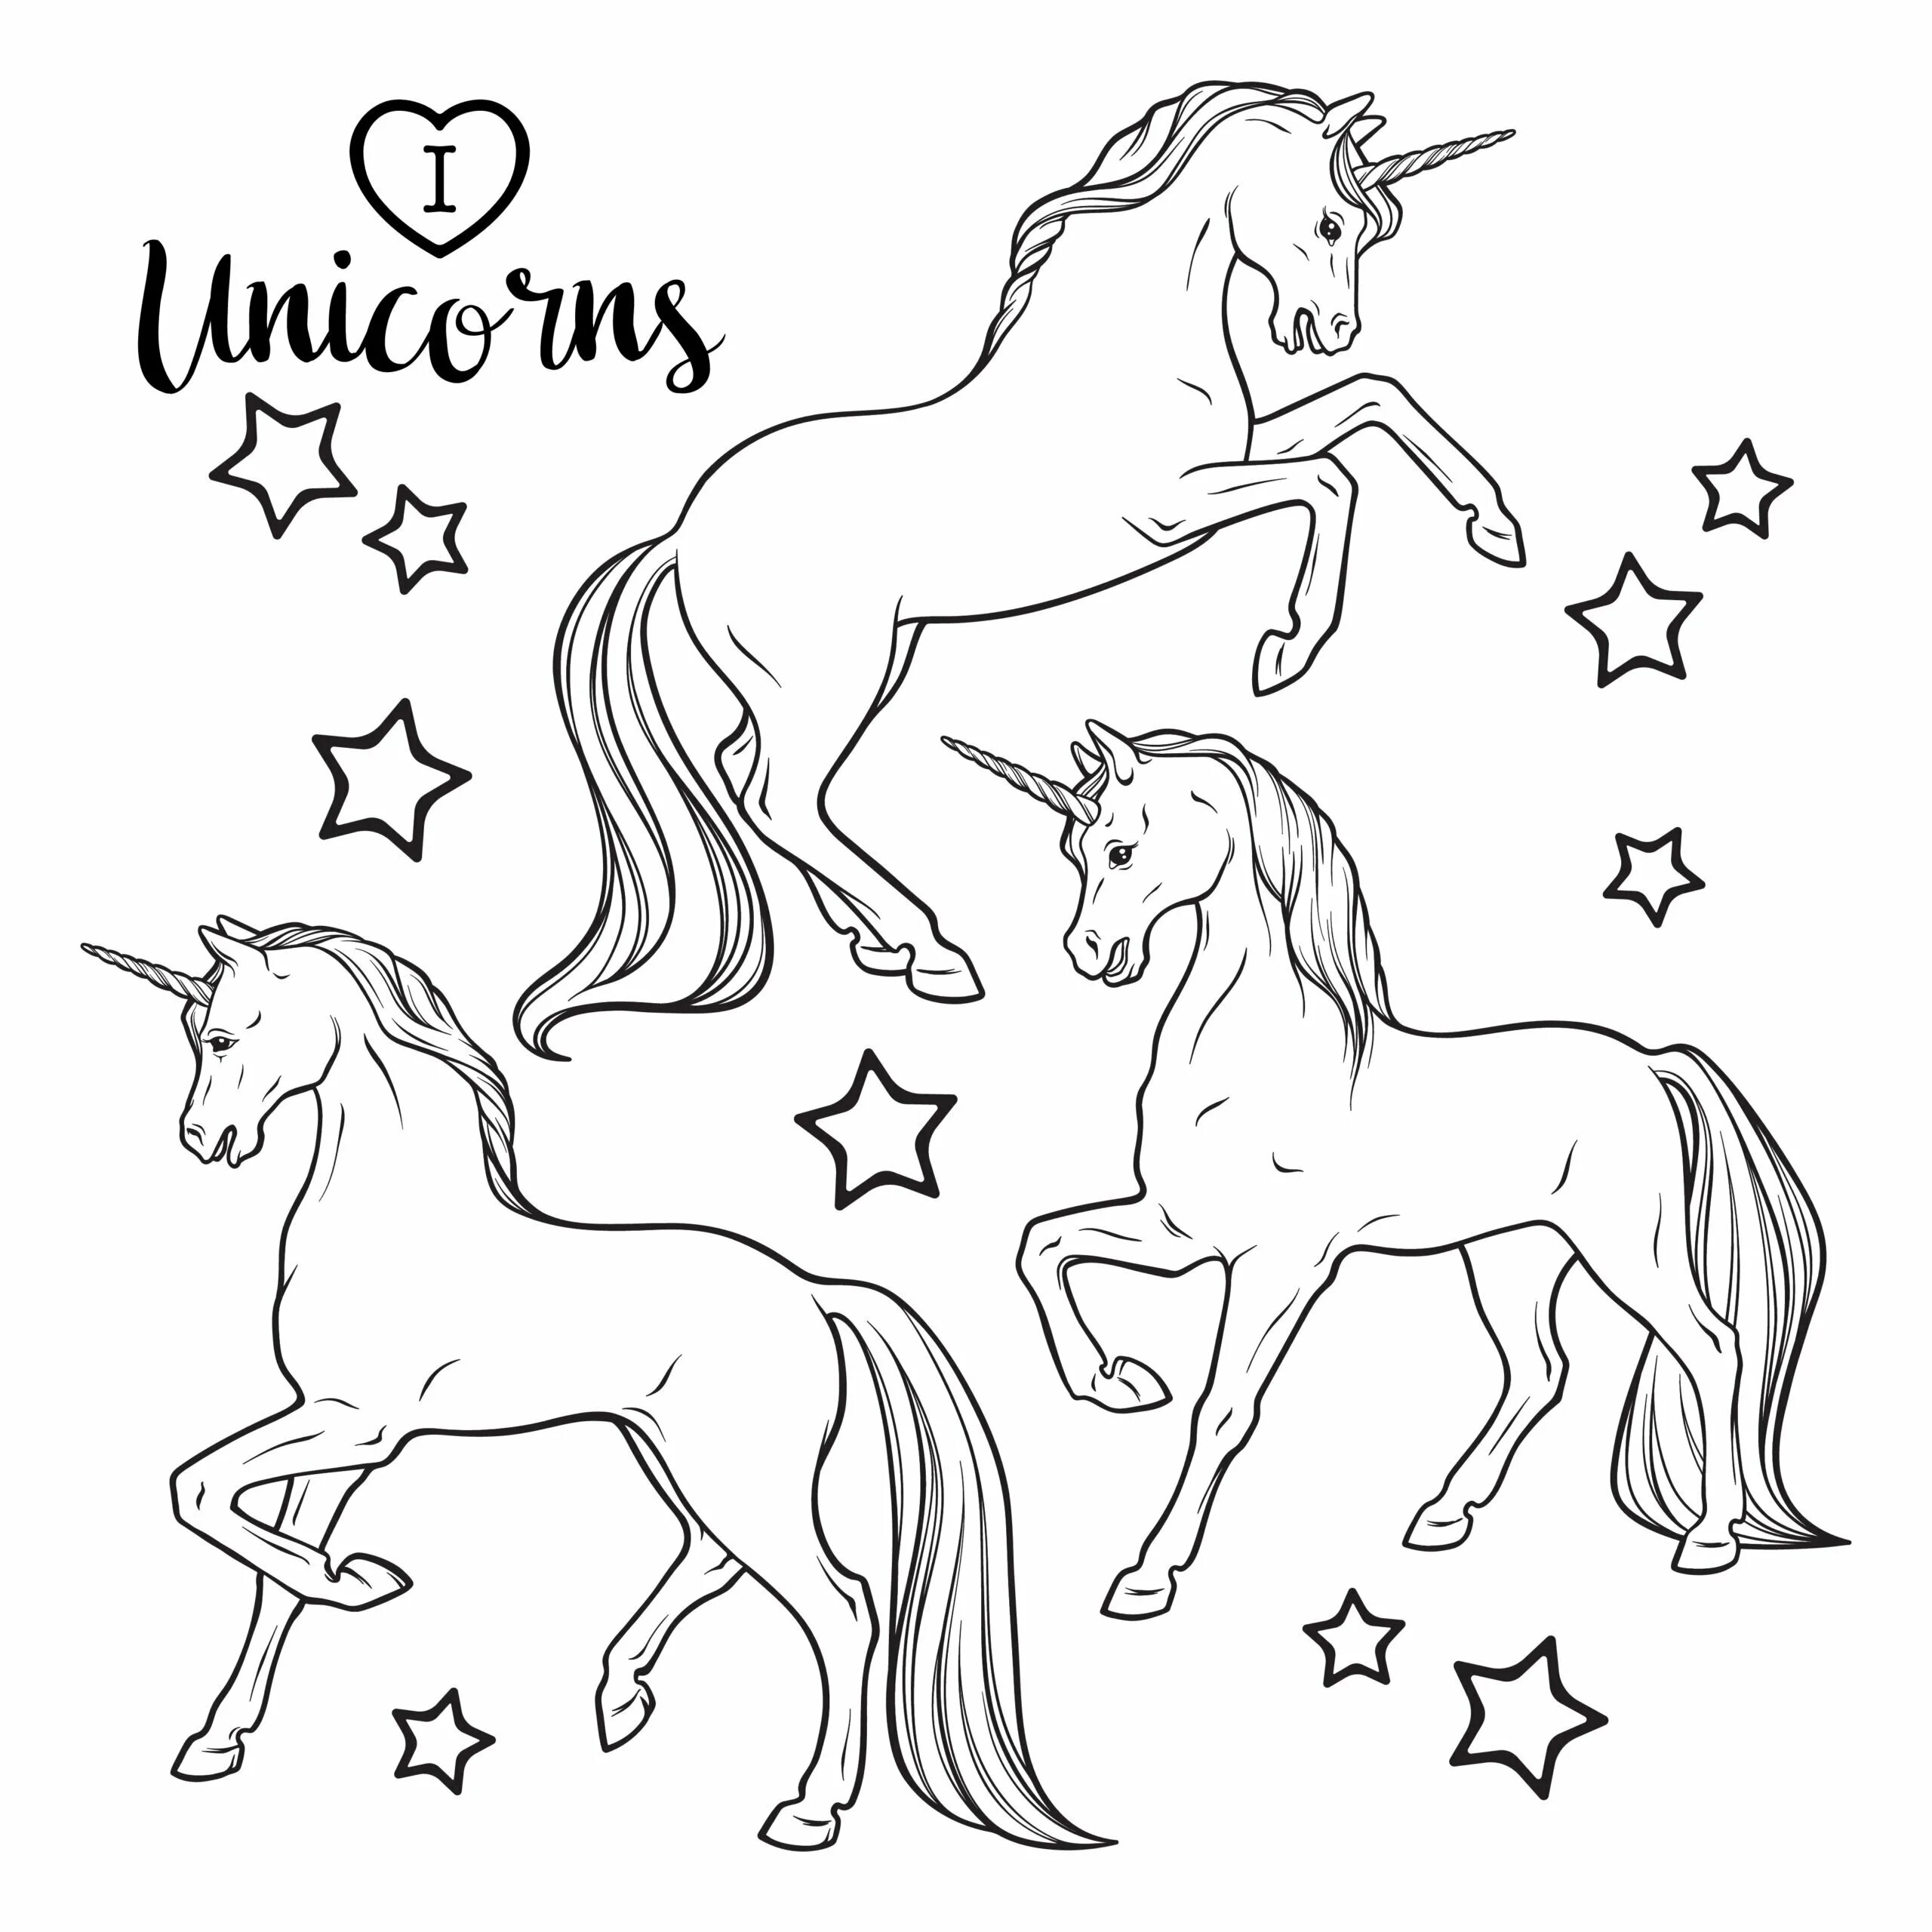 Turn on unicorns #2